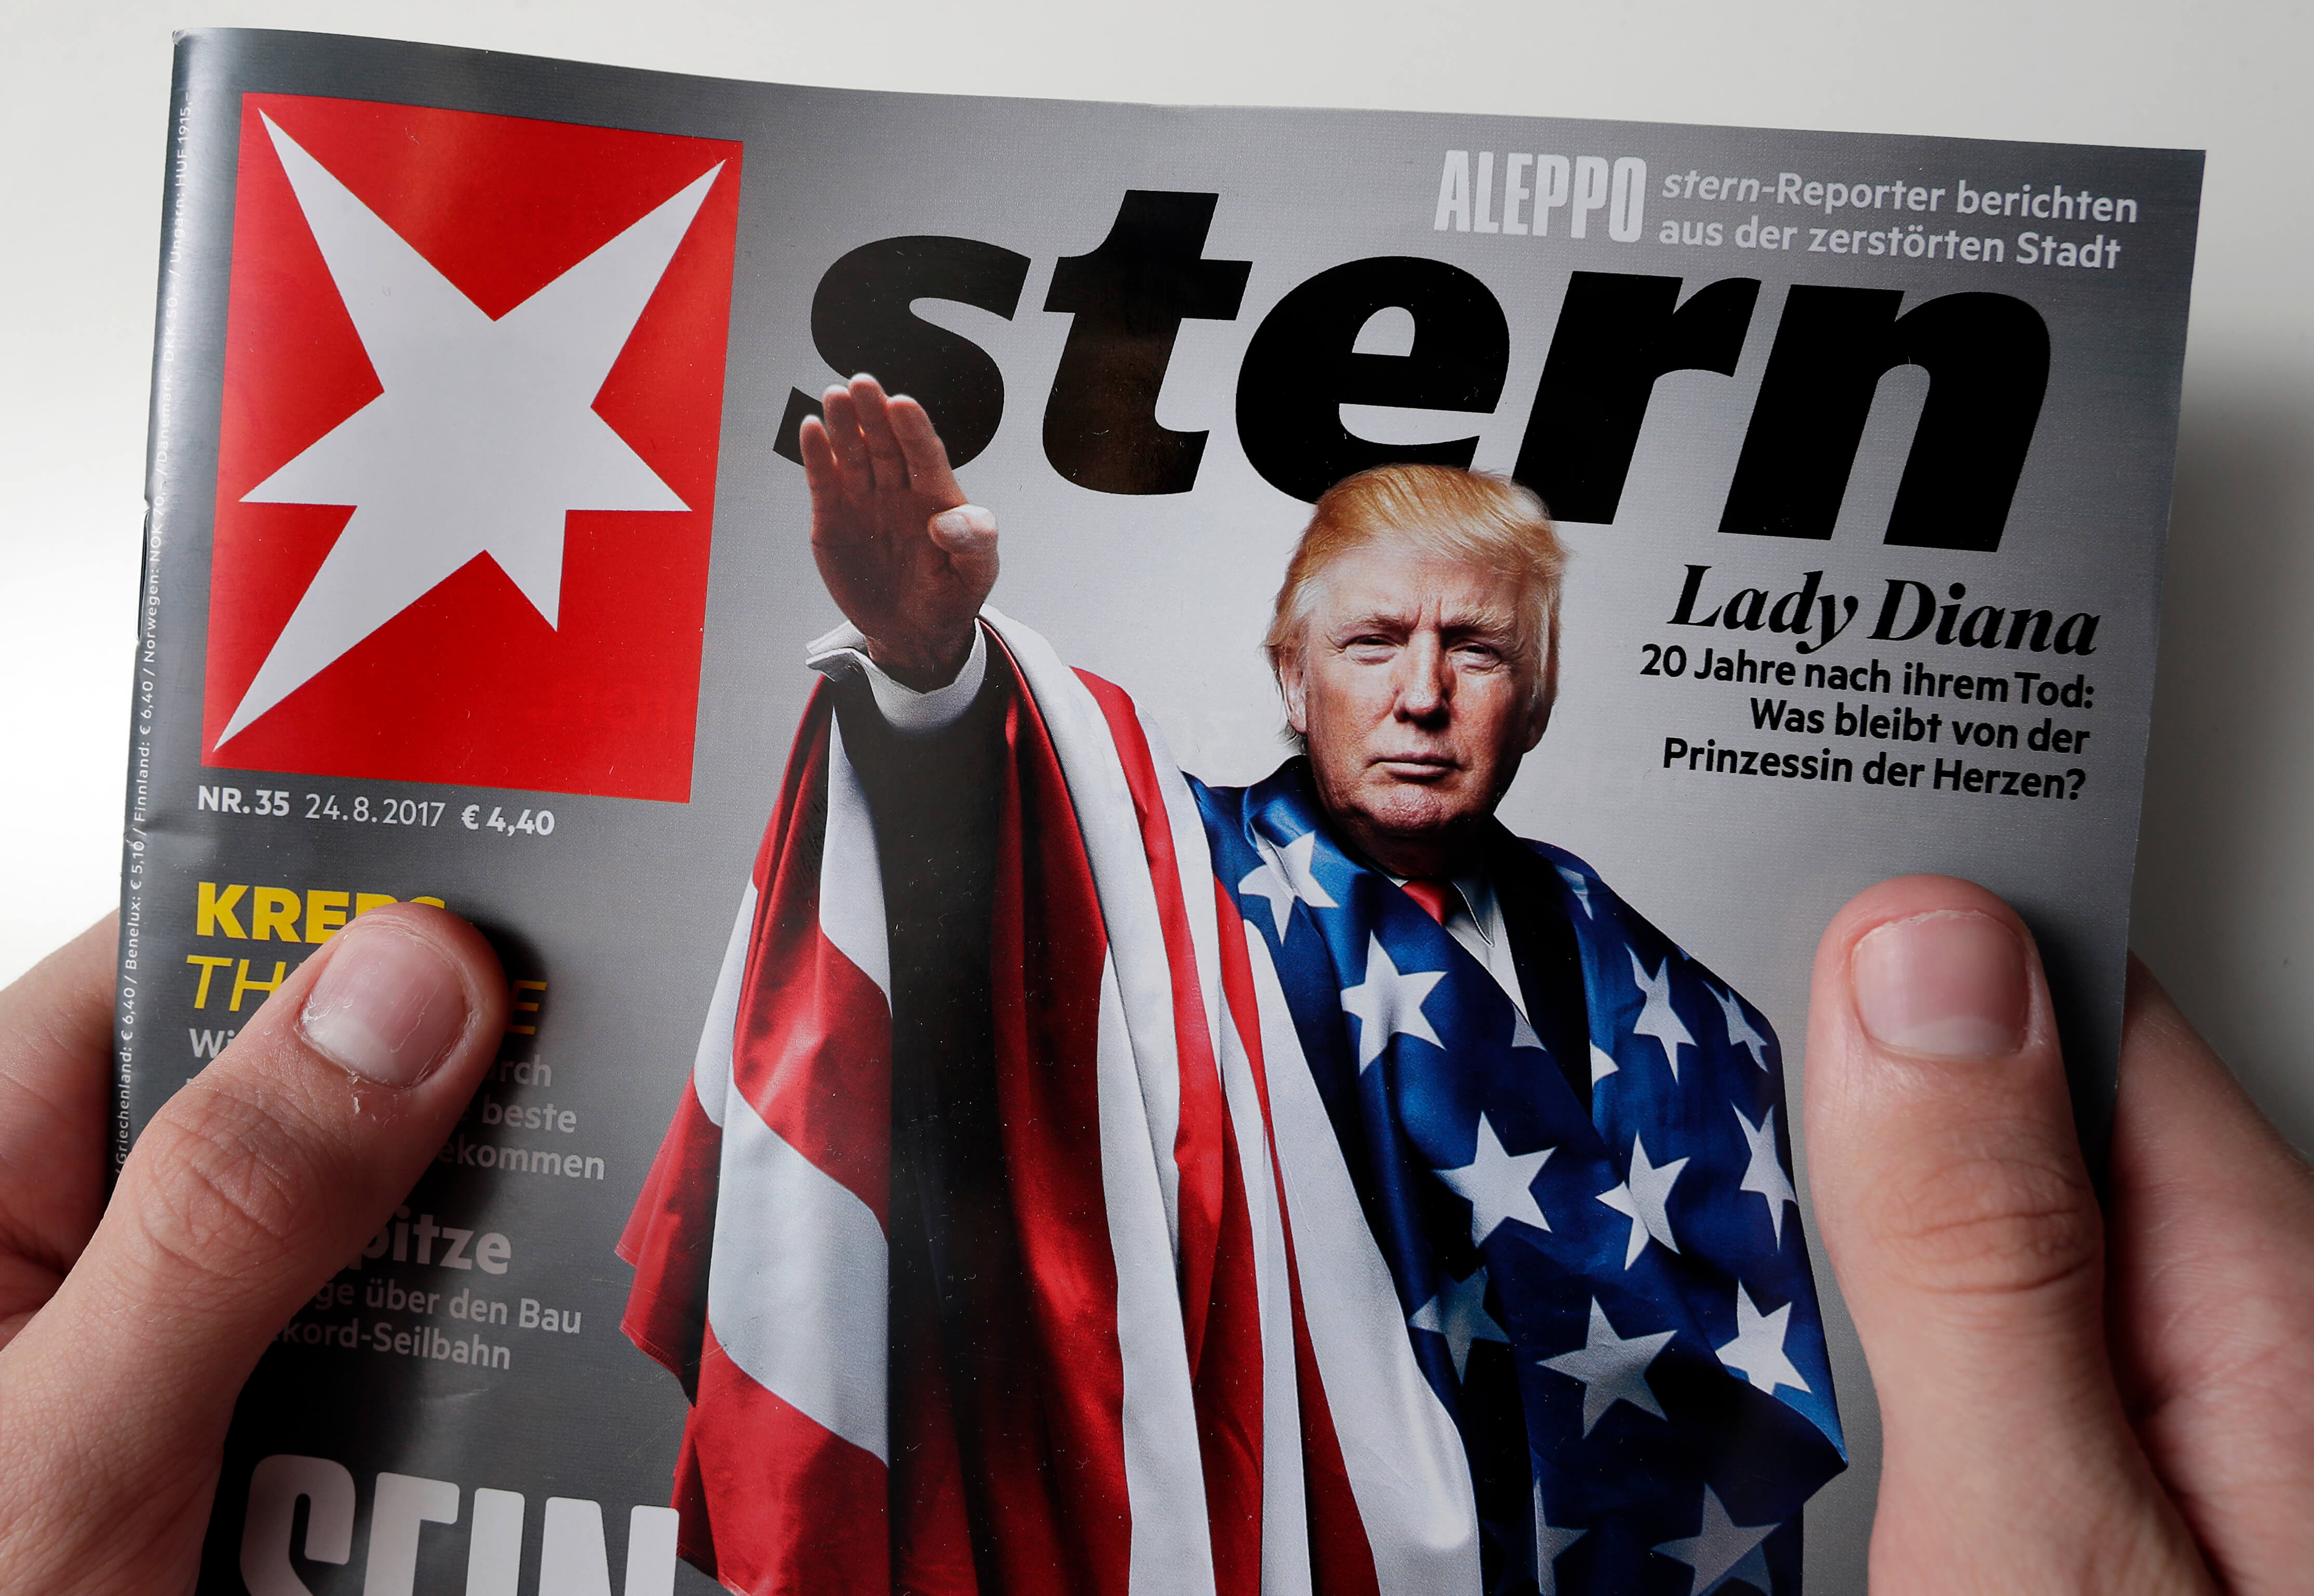 Trump aparece haciendo saludo nazi en la portada de revista alemana